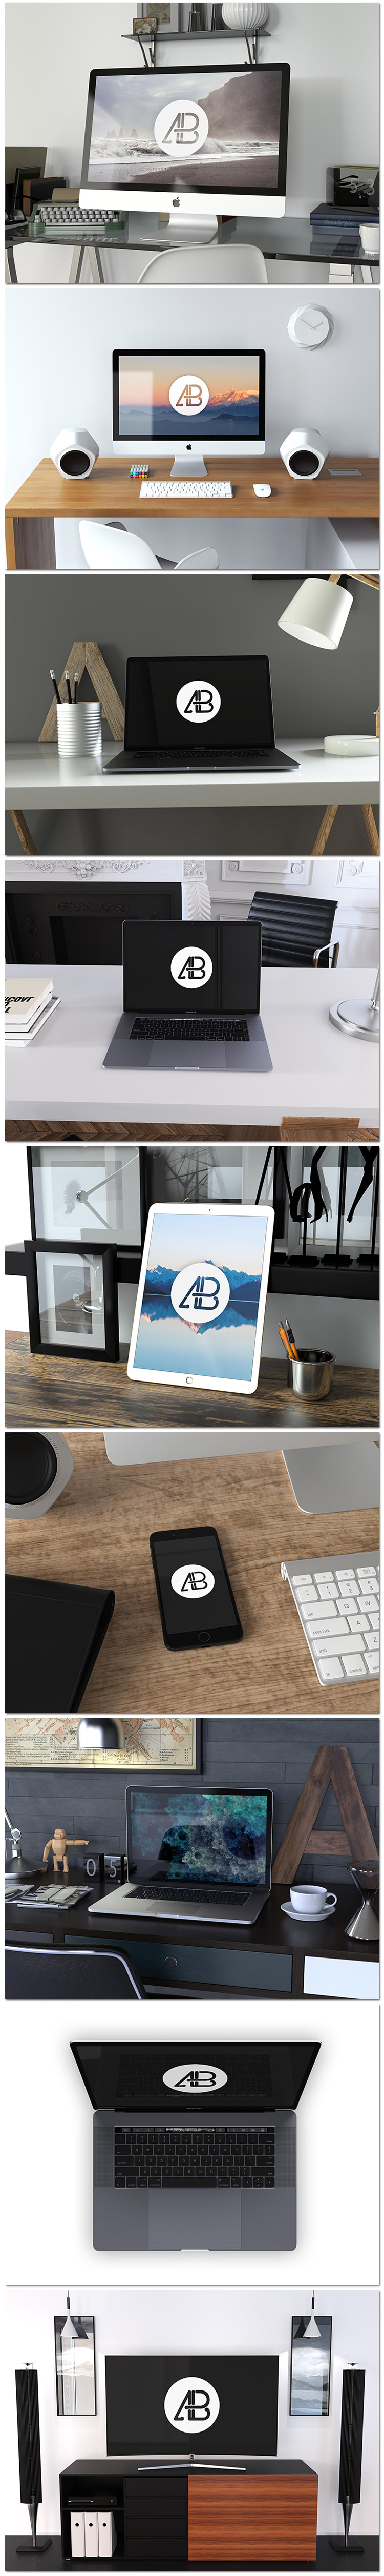 苹果平板笔记本电脑桌面书房客厅模型展示样机psd模板素材设计